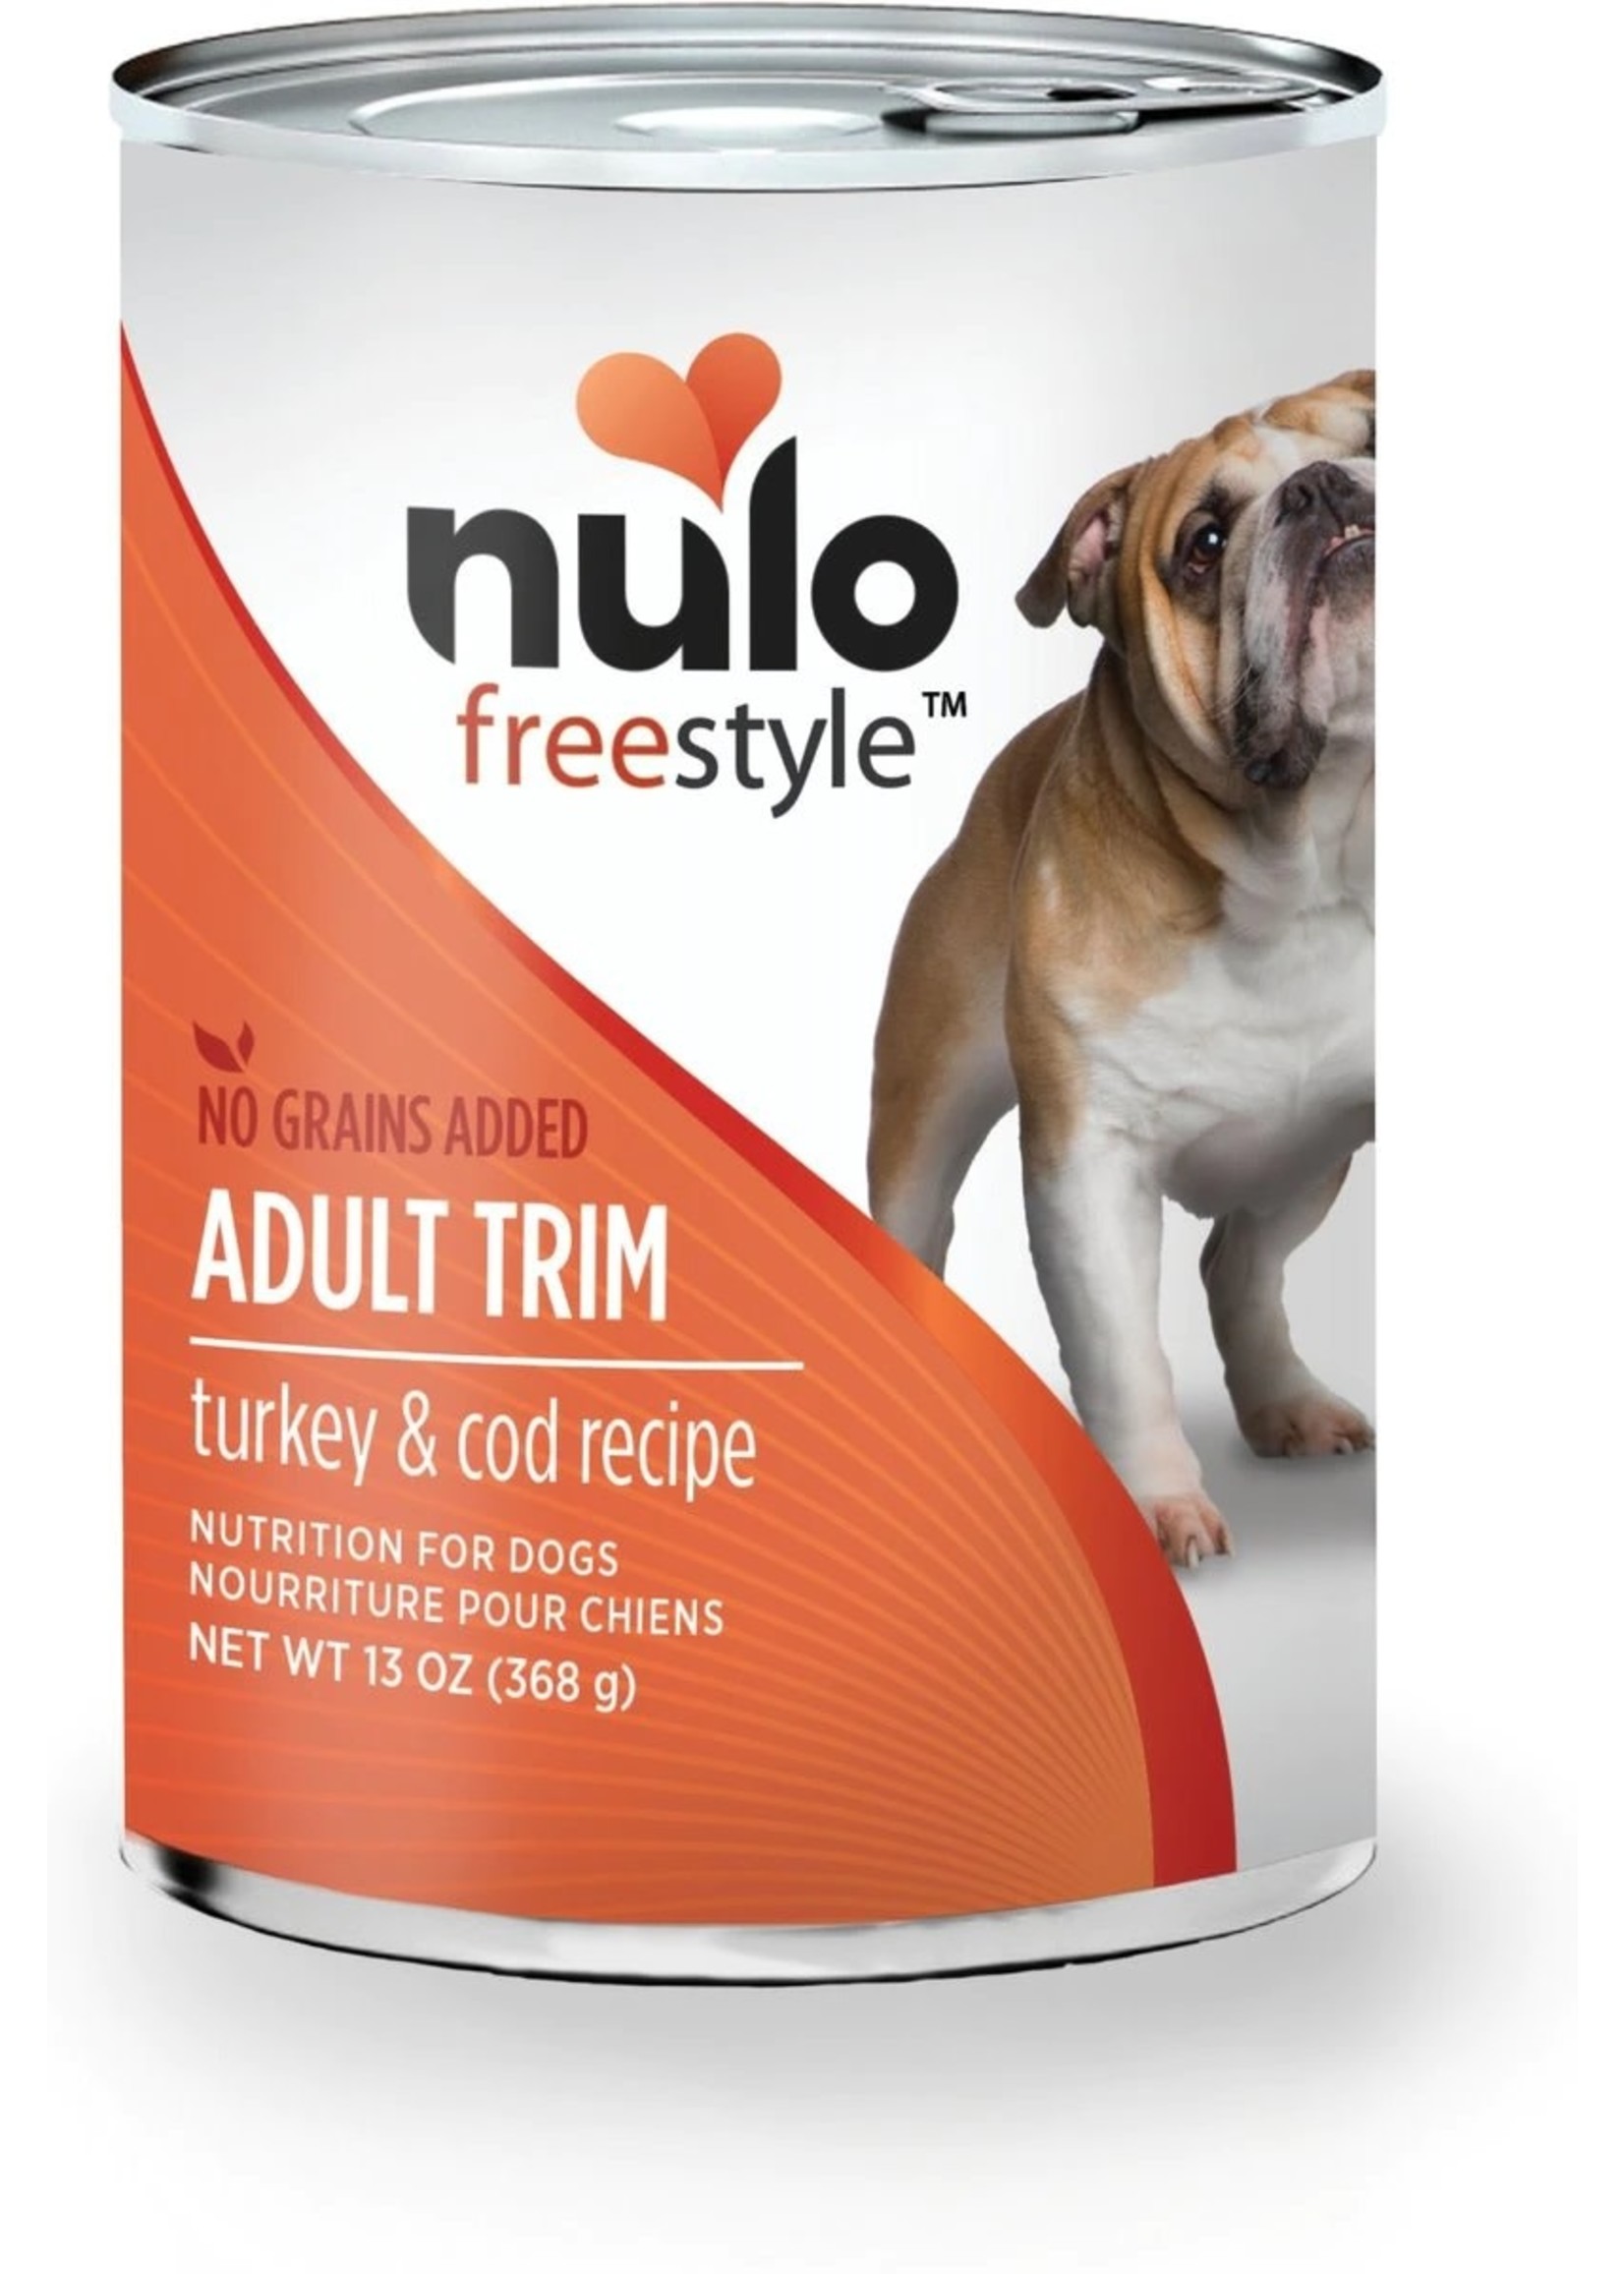 Nulo FreeStyle Grain Free Turkey & Cod Recipe Adult Trim Dog Food 13 oz